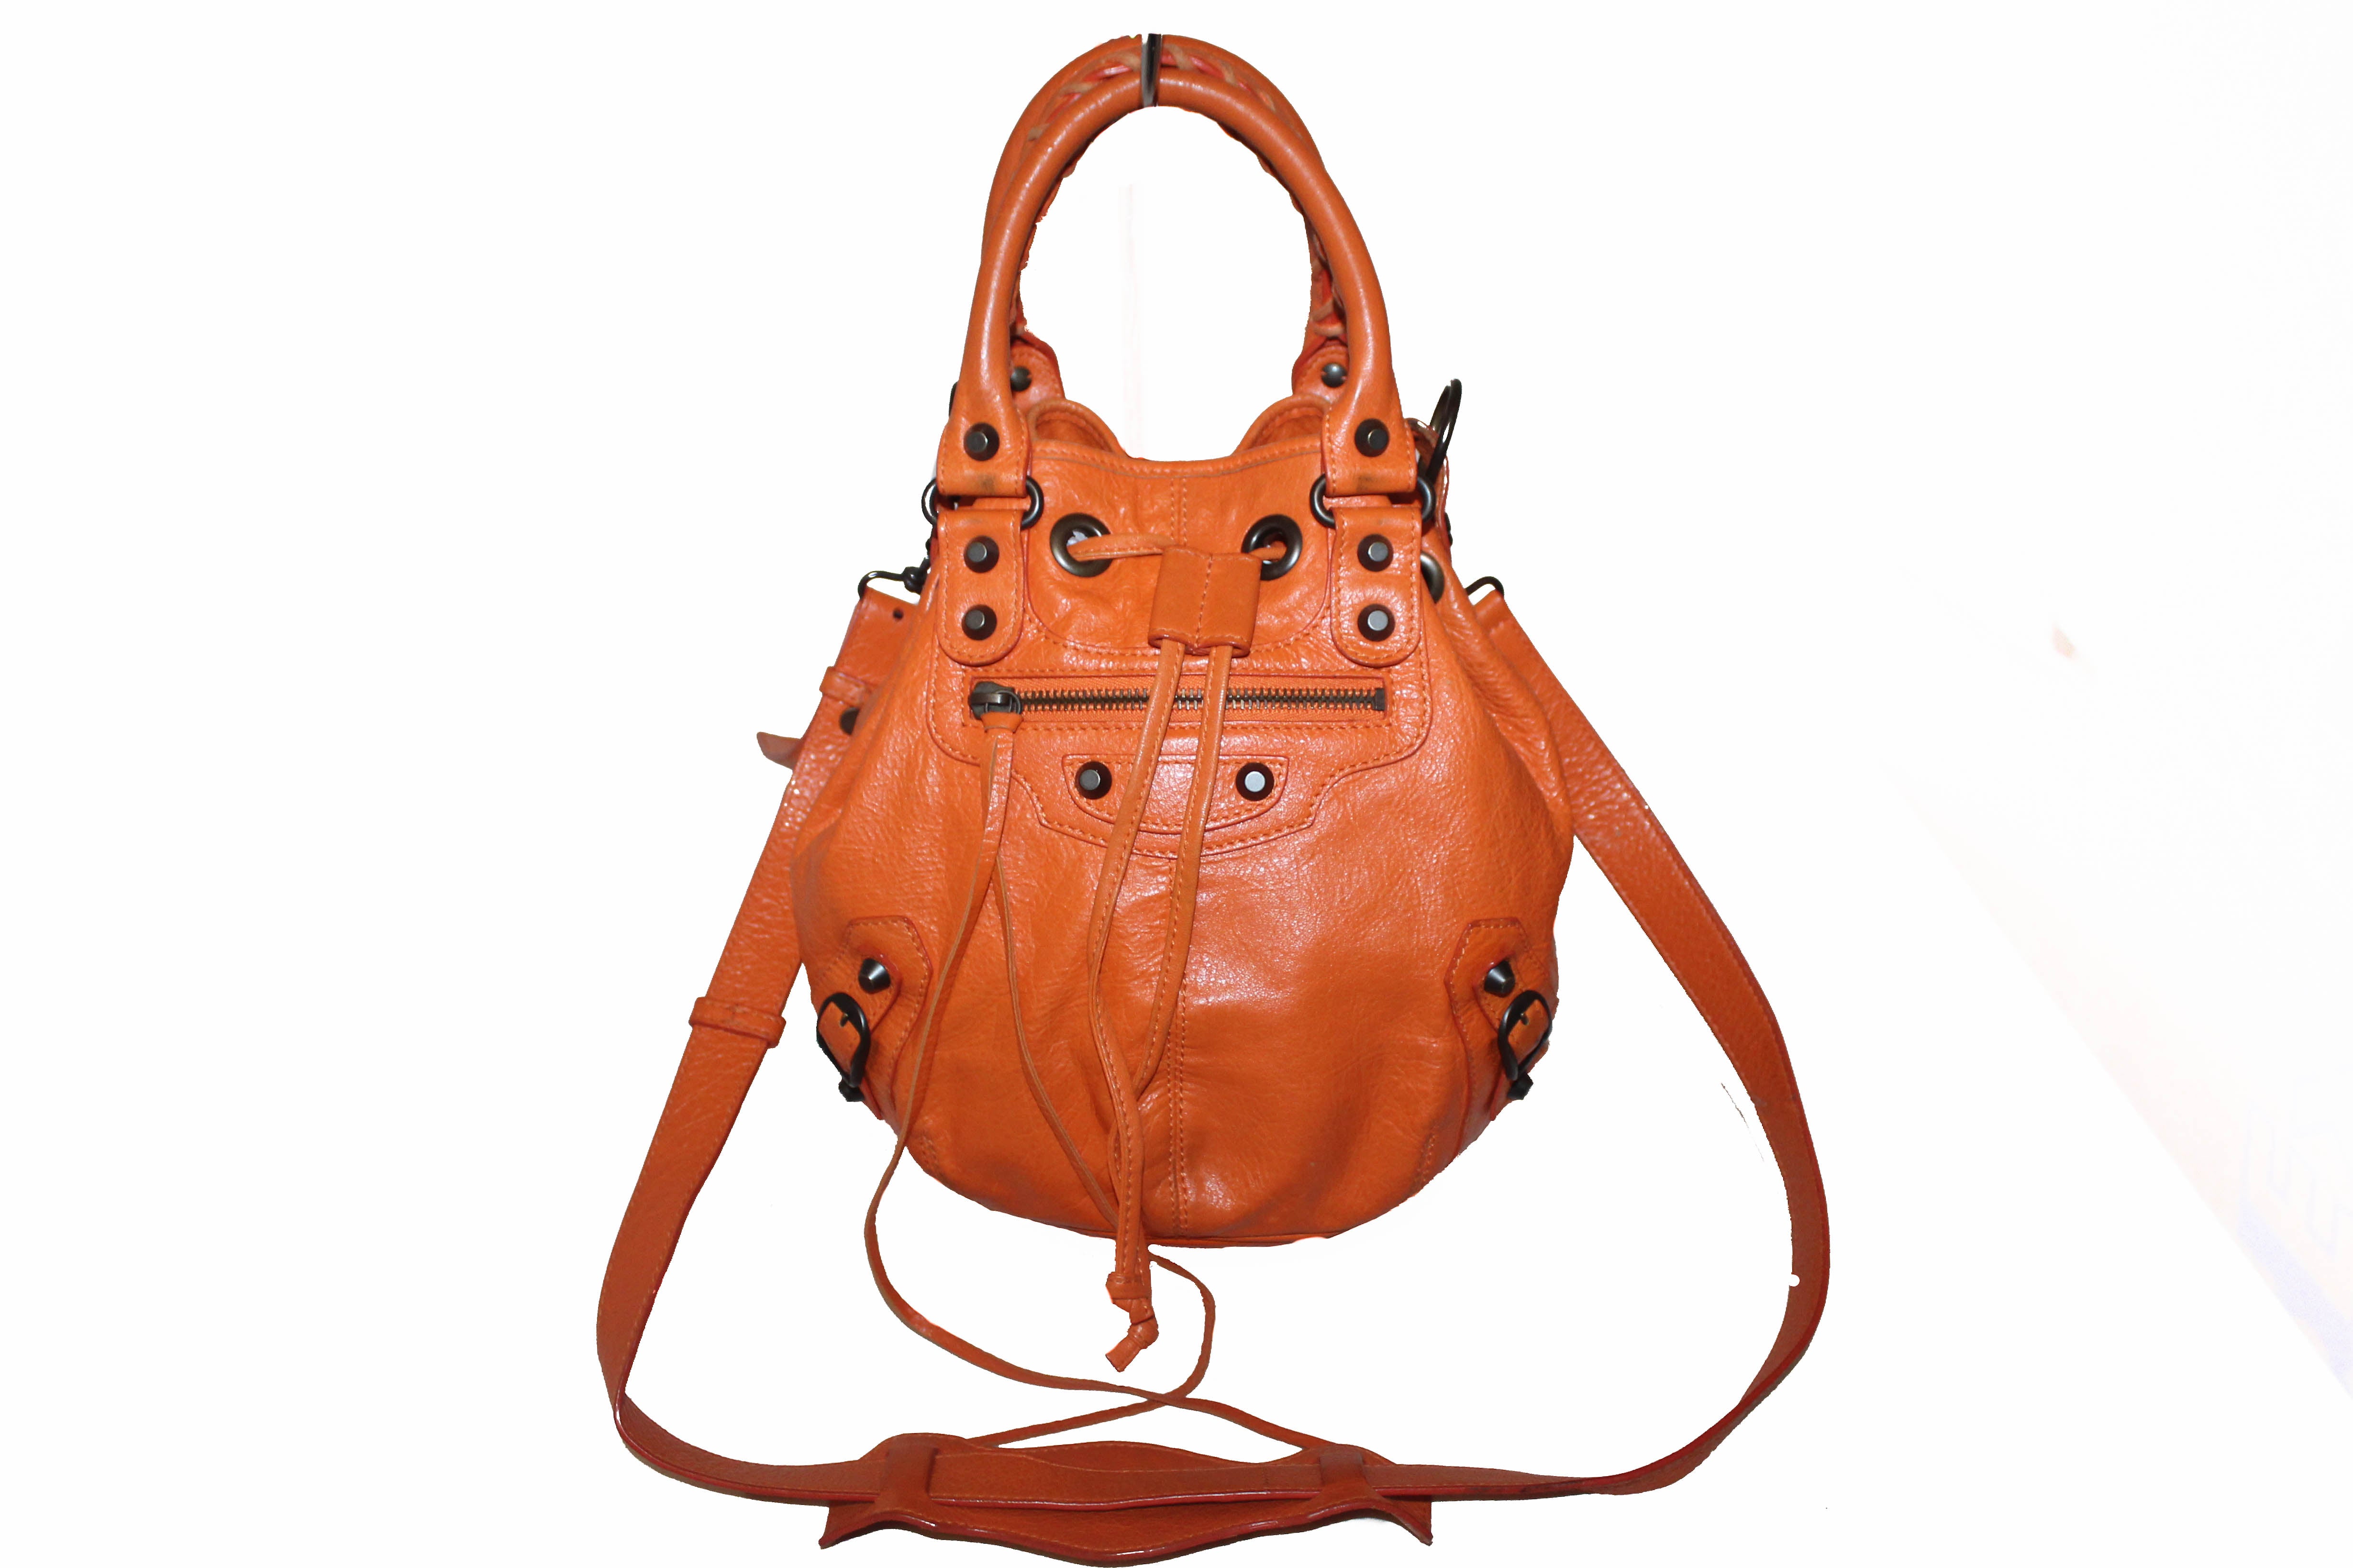 Balenciaga Orange Handbags